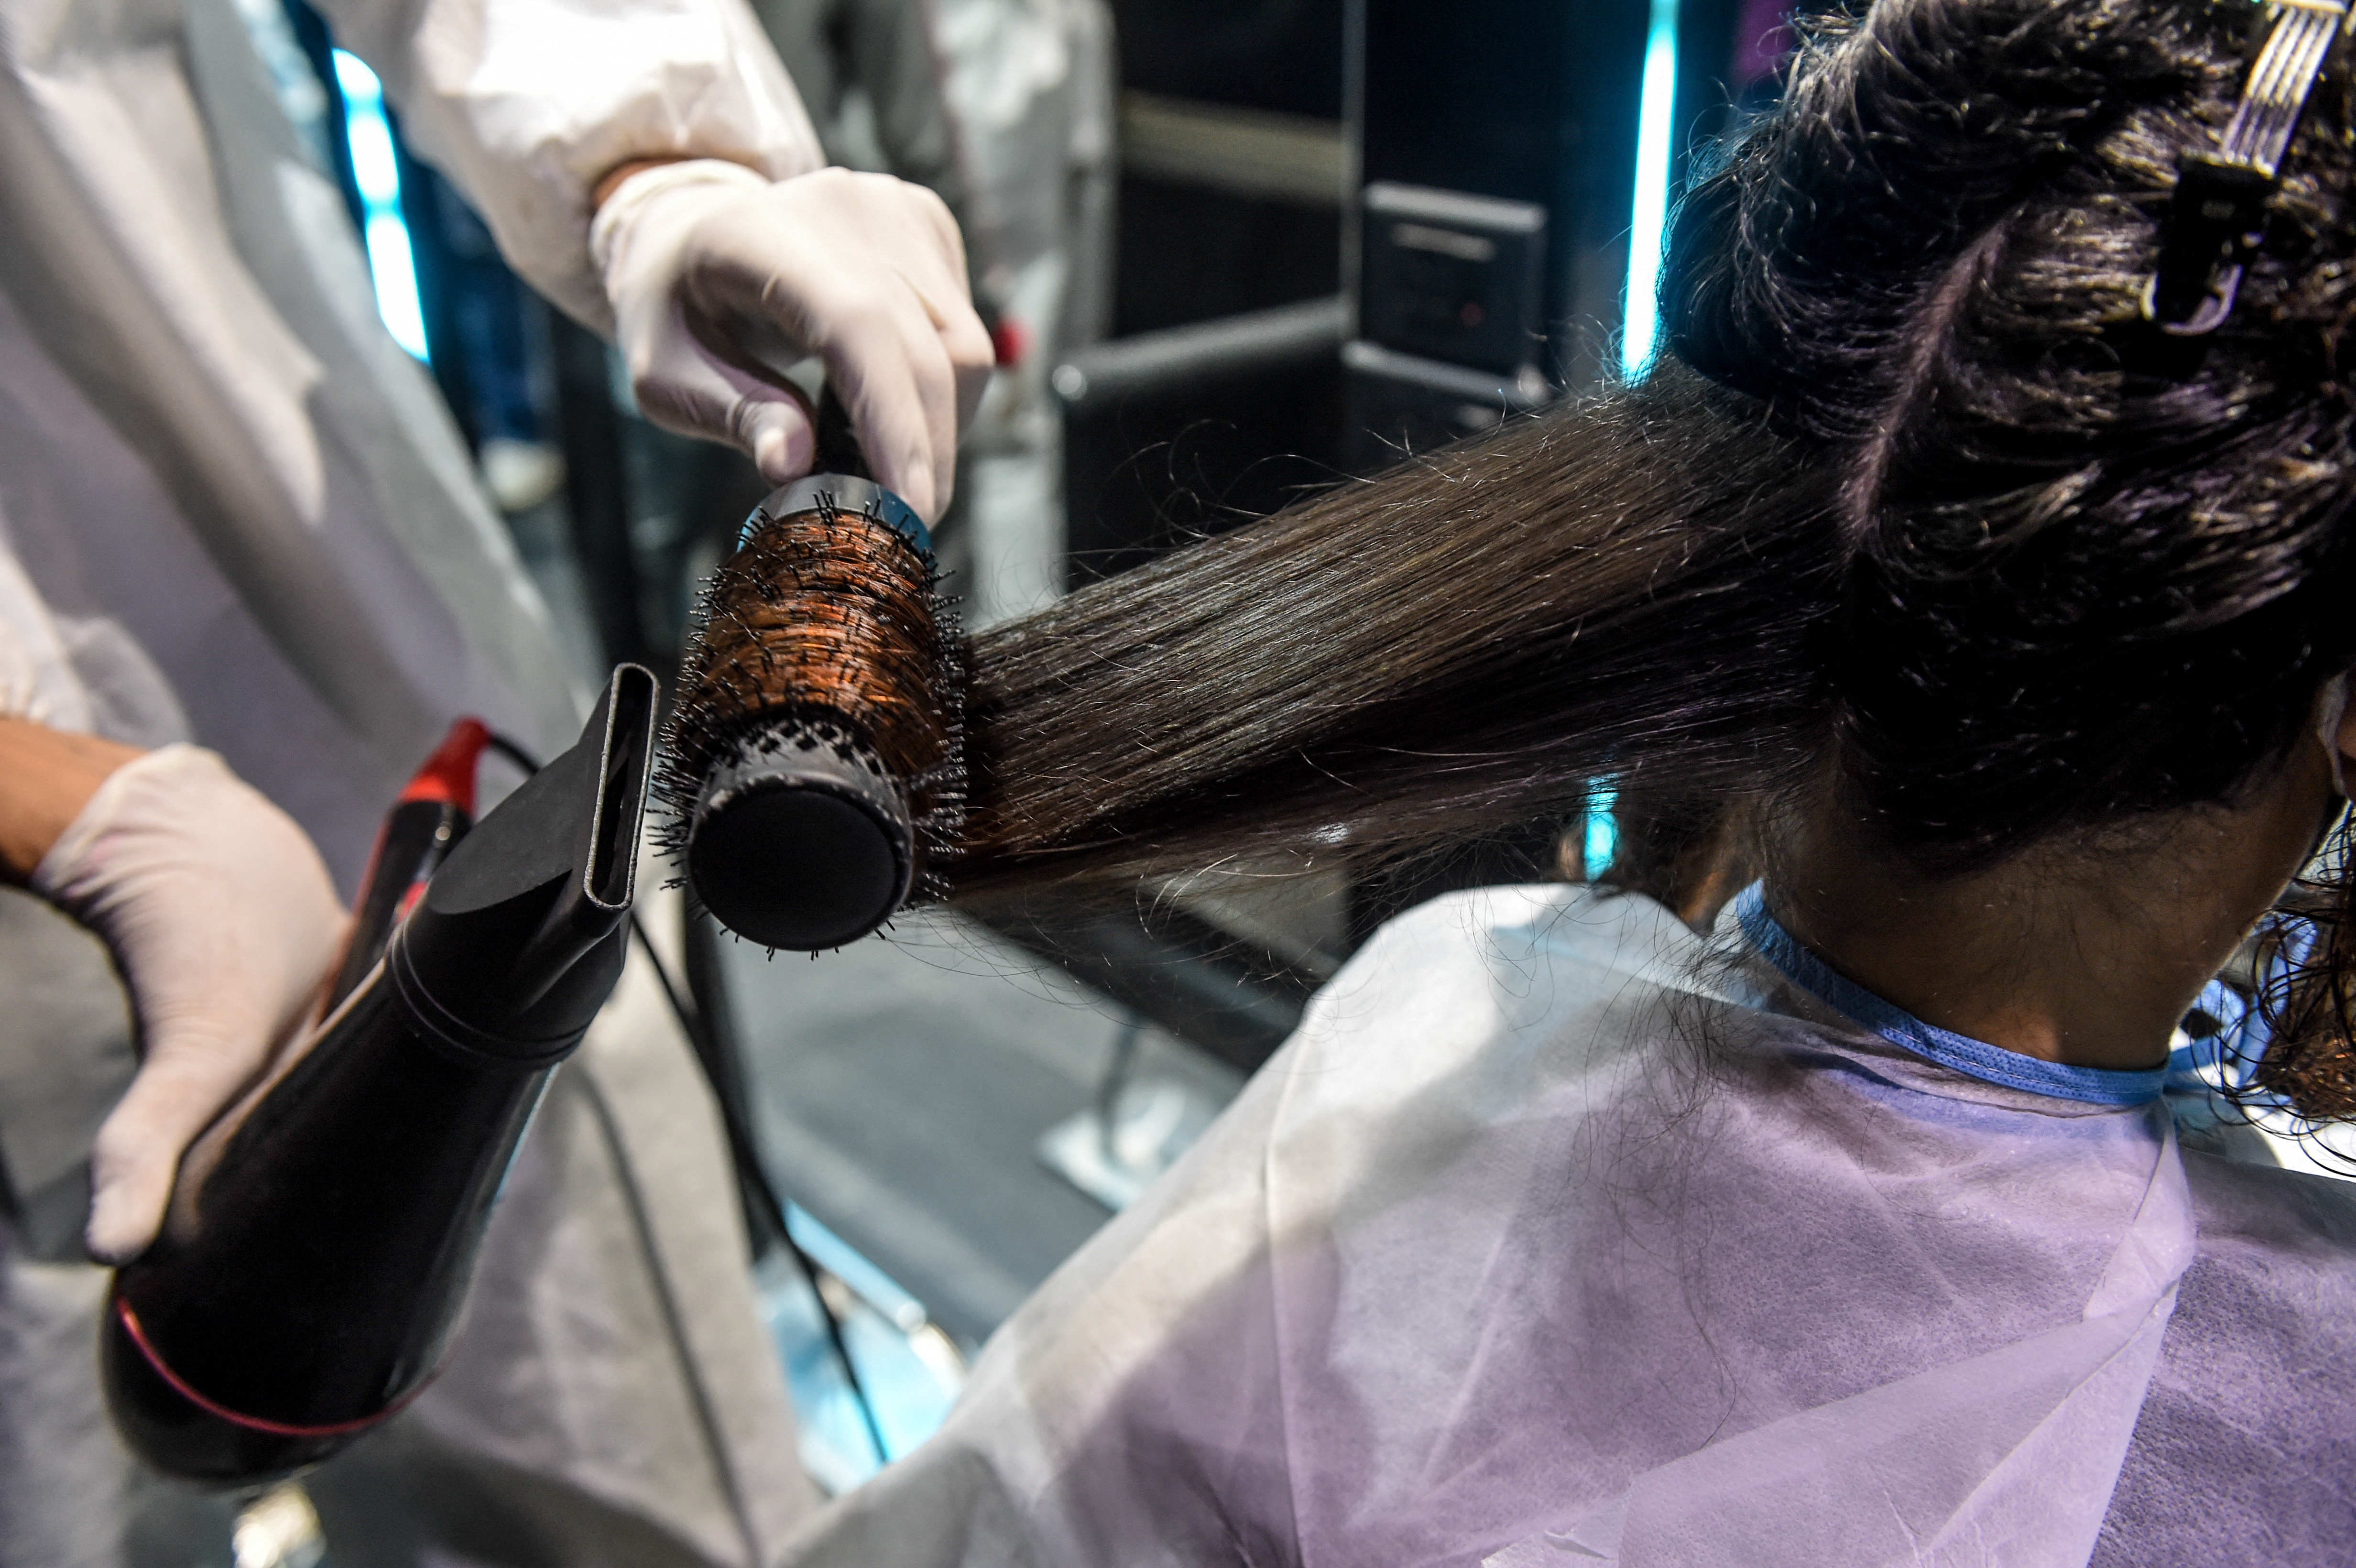 270 ezer dollárt fizet egy indiai fodrászat egy nőnek, mert elrontották a frizuráját